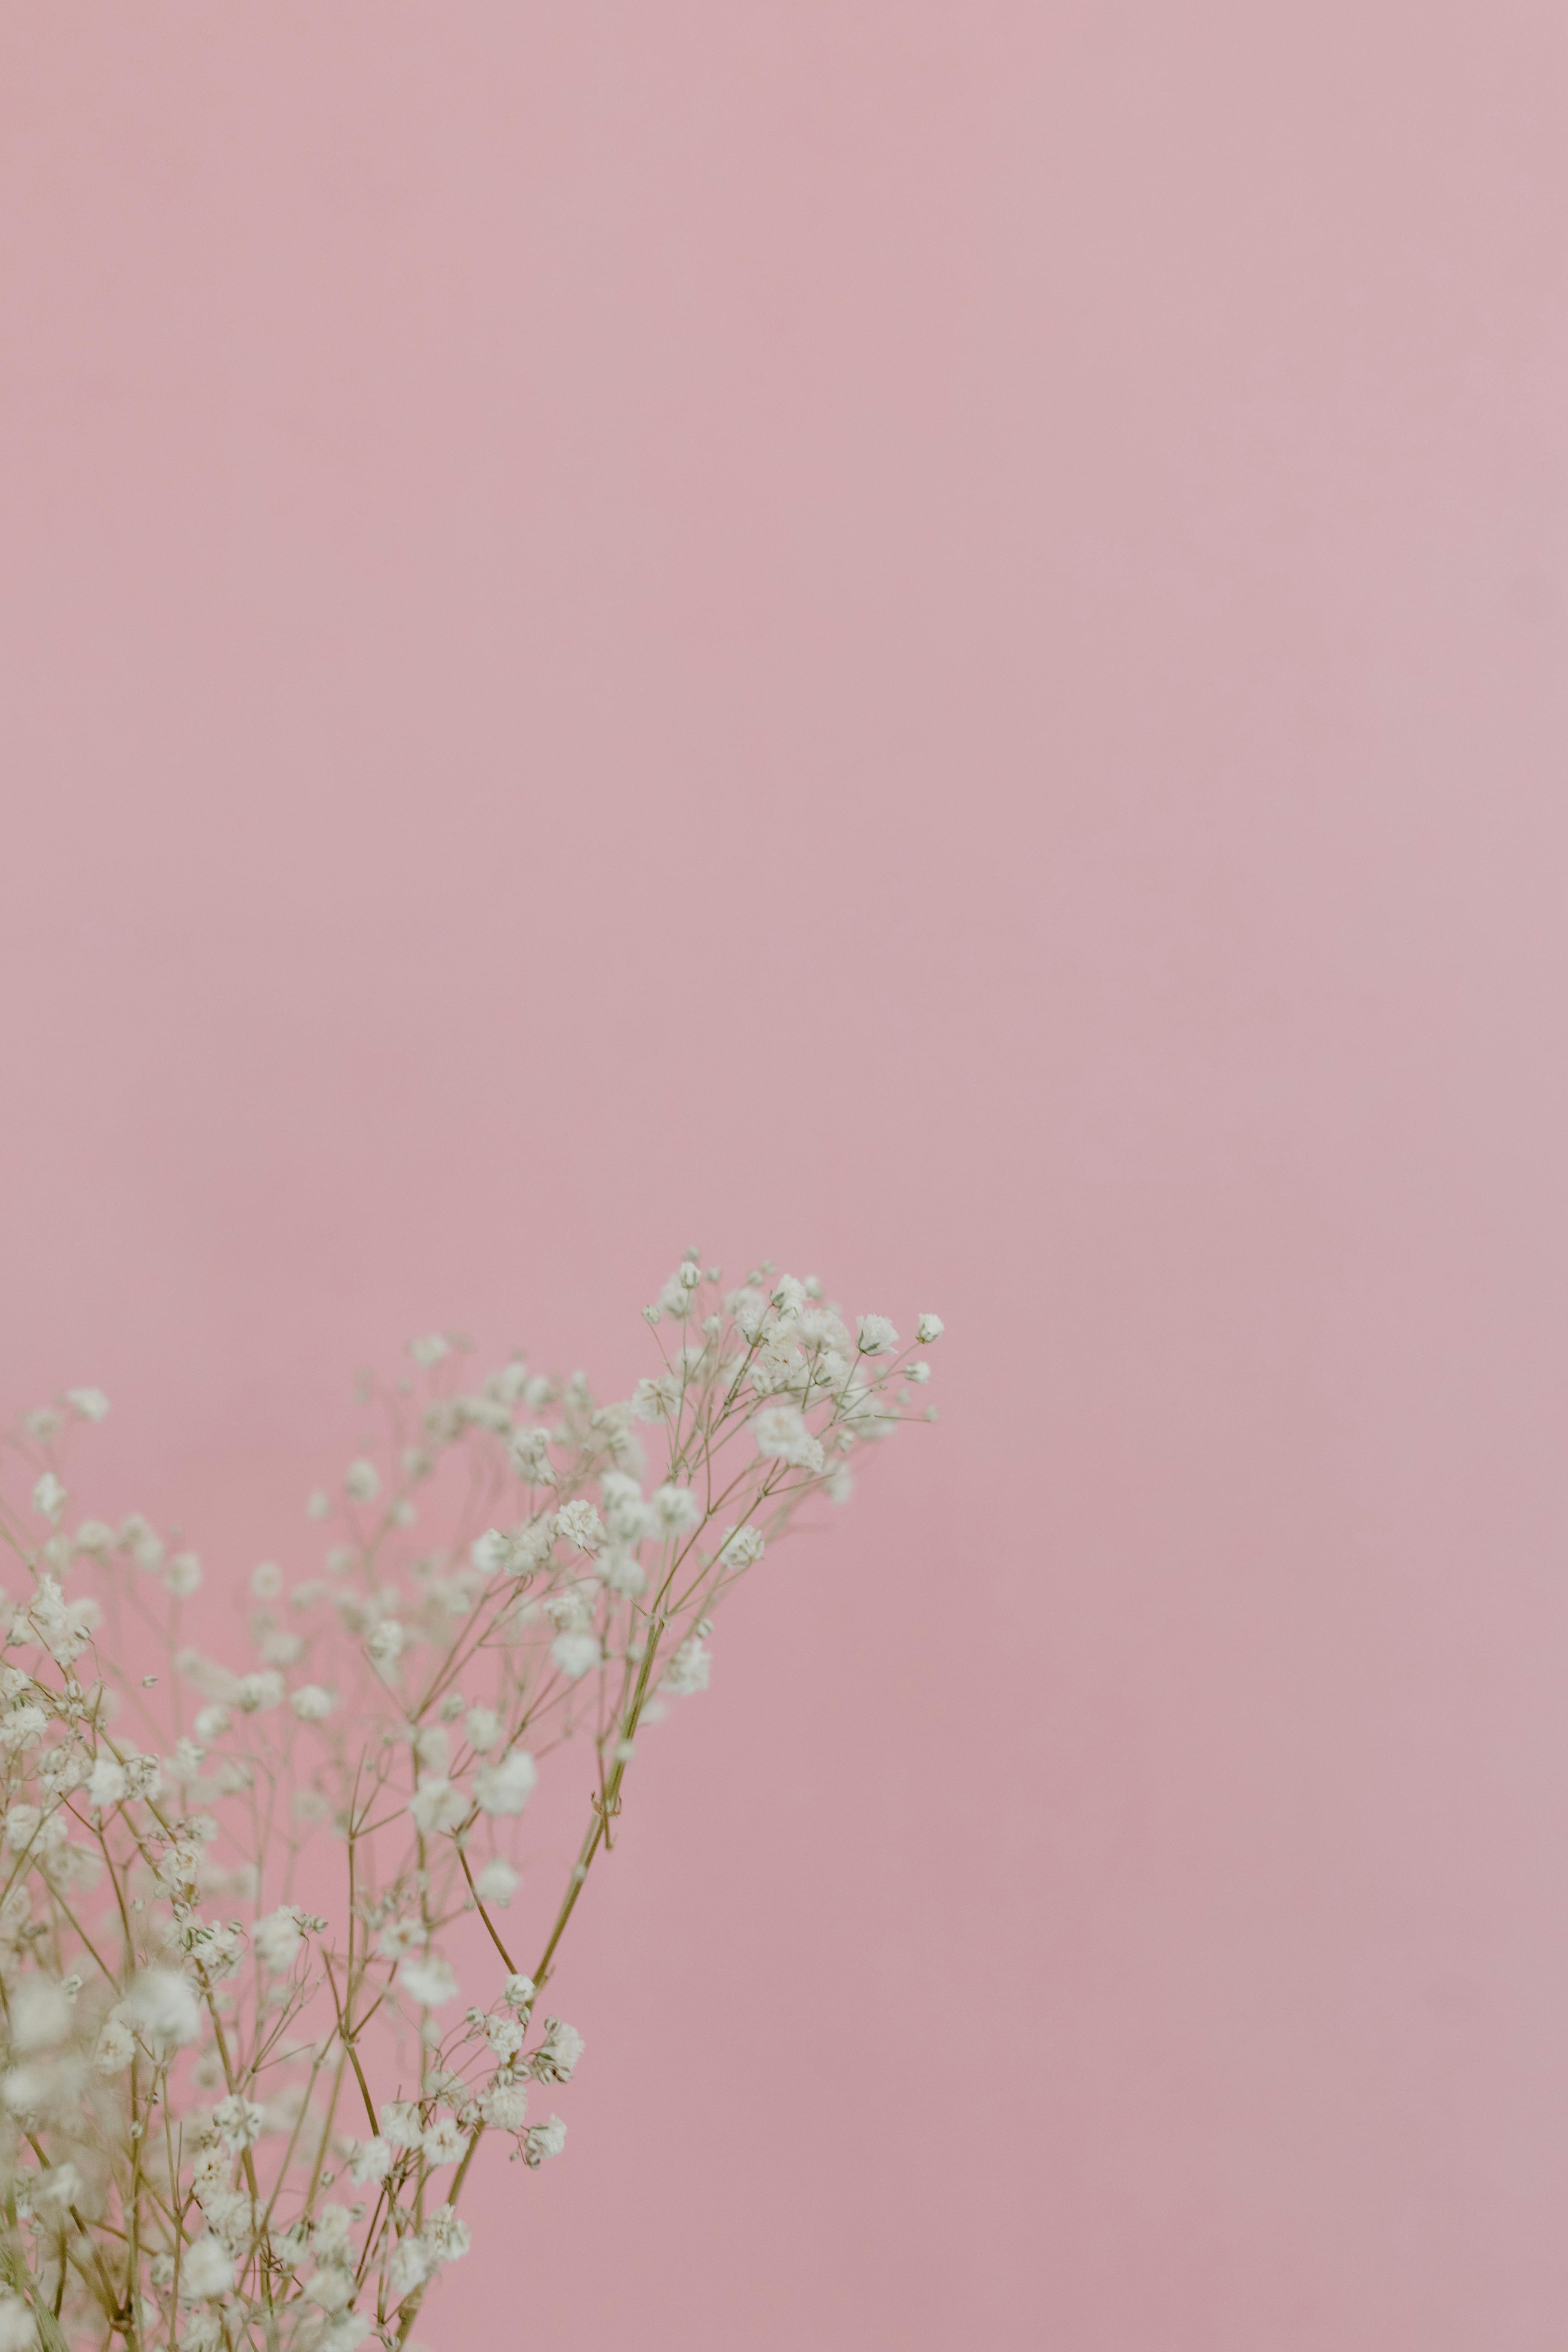 Hình nền hoa trắng trên nền hồng đầy tình yêu sẽ mang lại cho bạn một cảm giác nhẹ nhàng và ấm áp. Hãy tràn đầy năng lượng cho ngày mới bằng hình nền này.